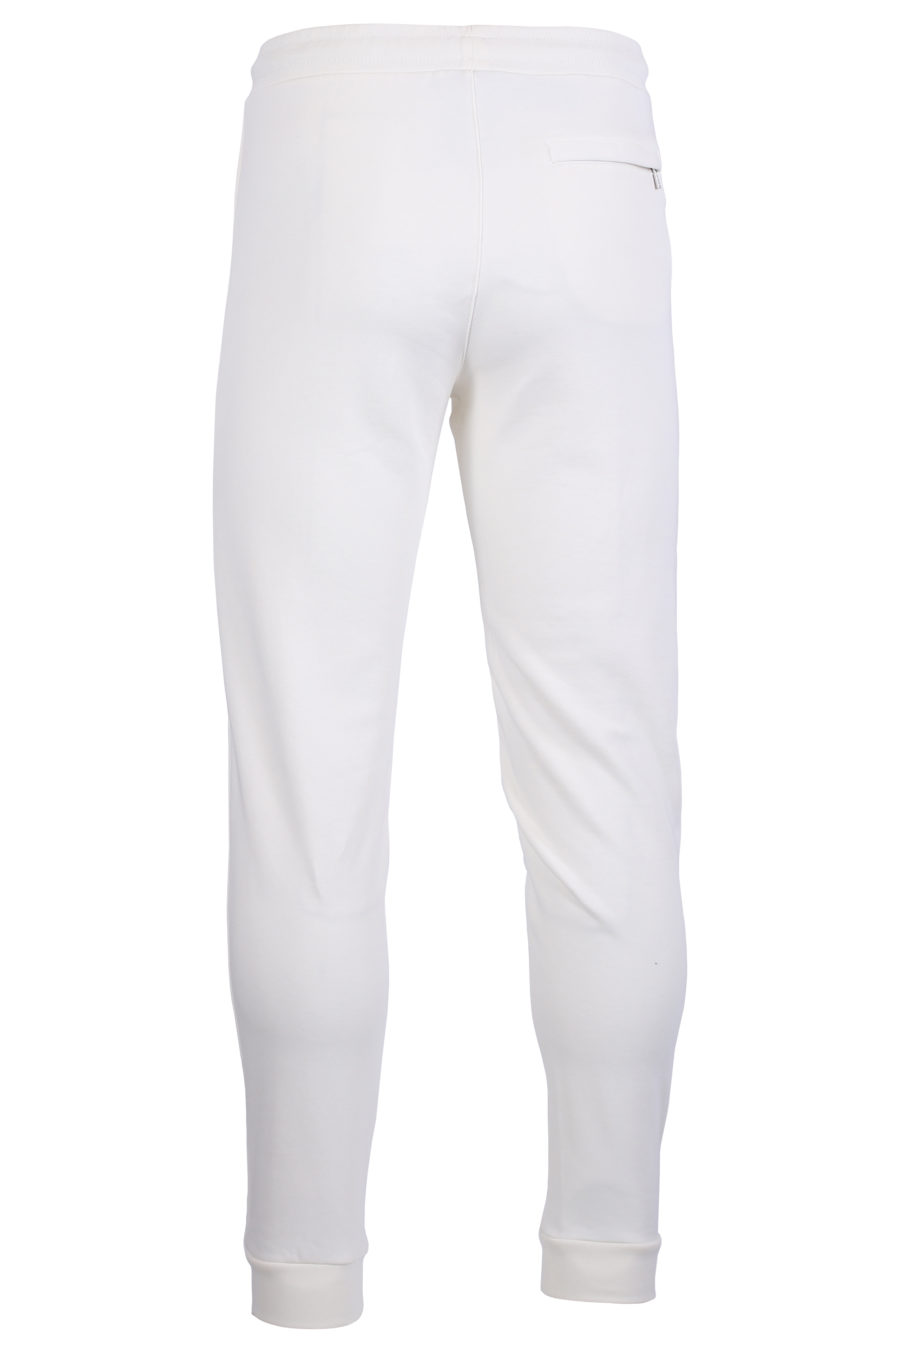 Pantalón de chándal blanco con logotipo en relieve - IMG 0622